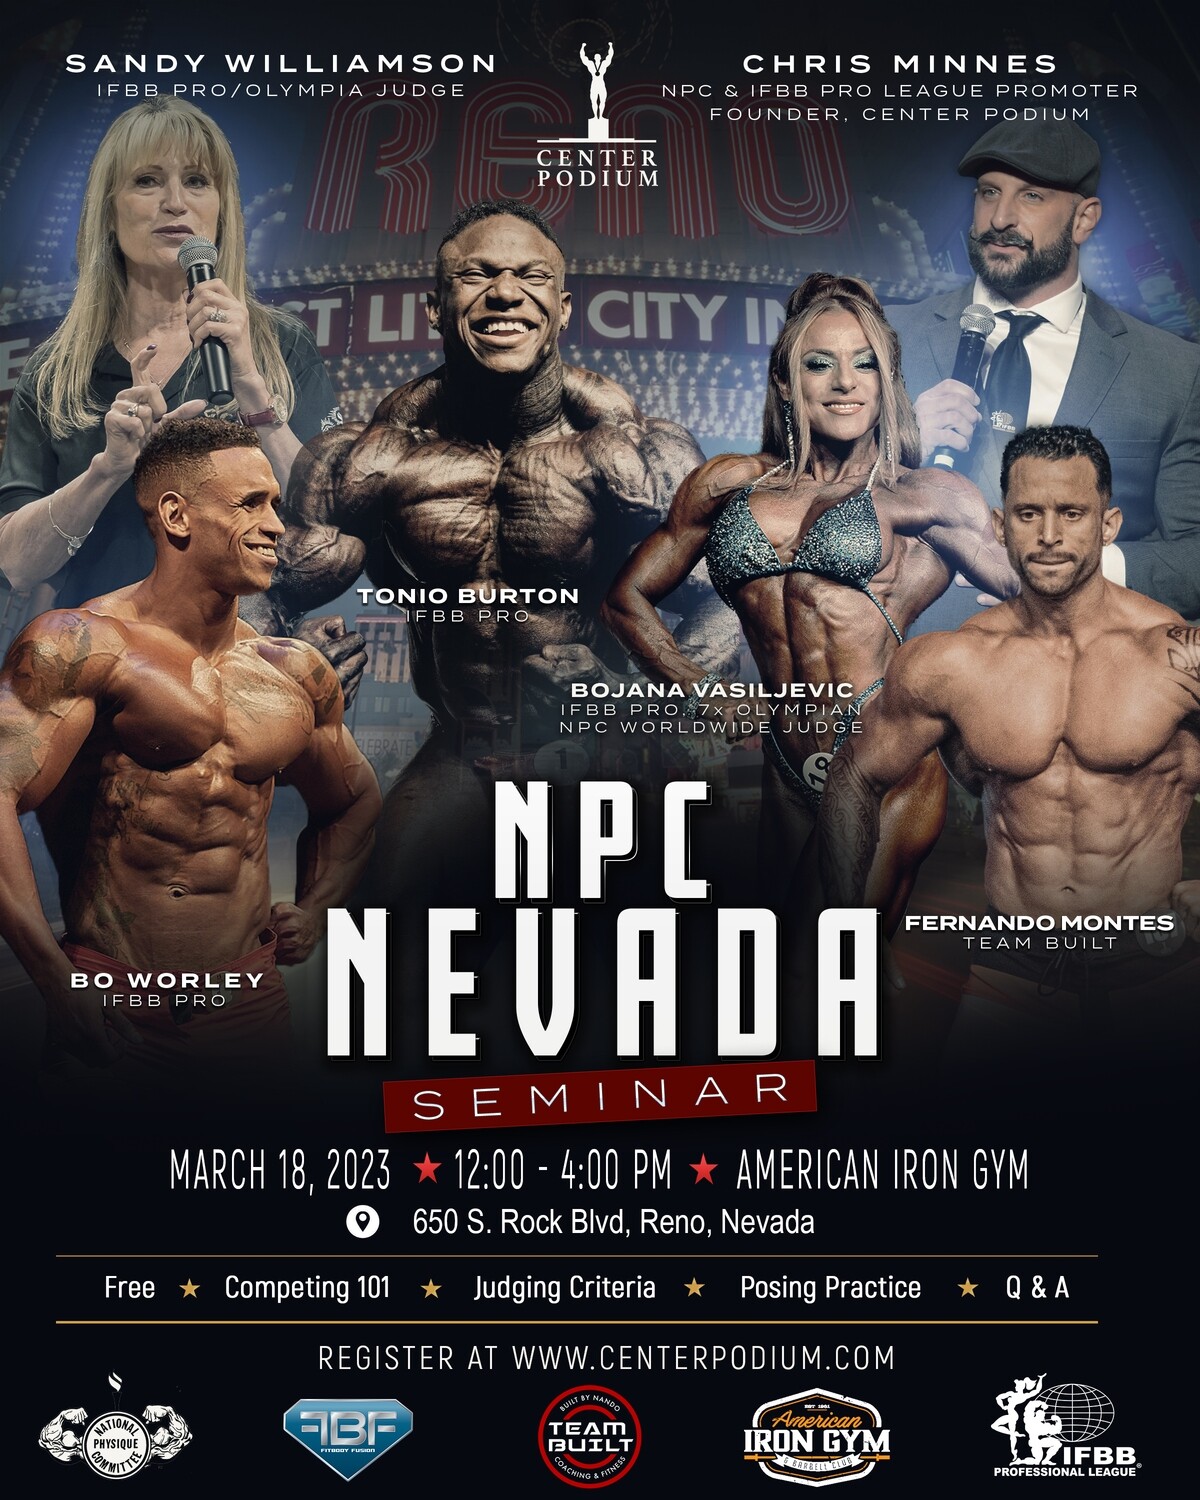 NPC Nevada Seminar